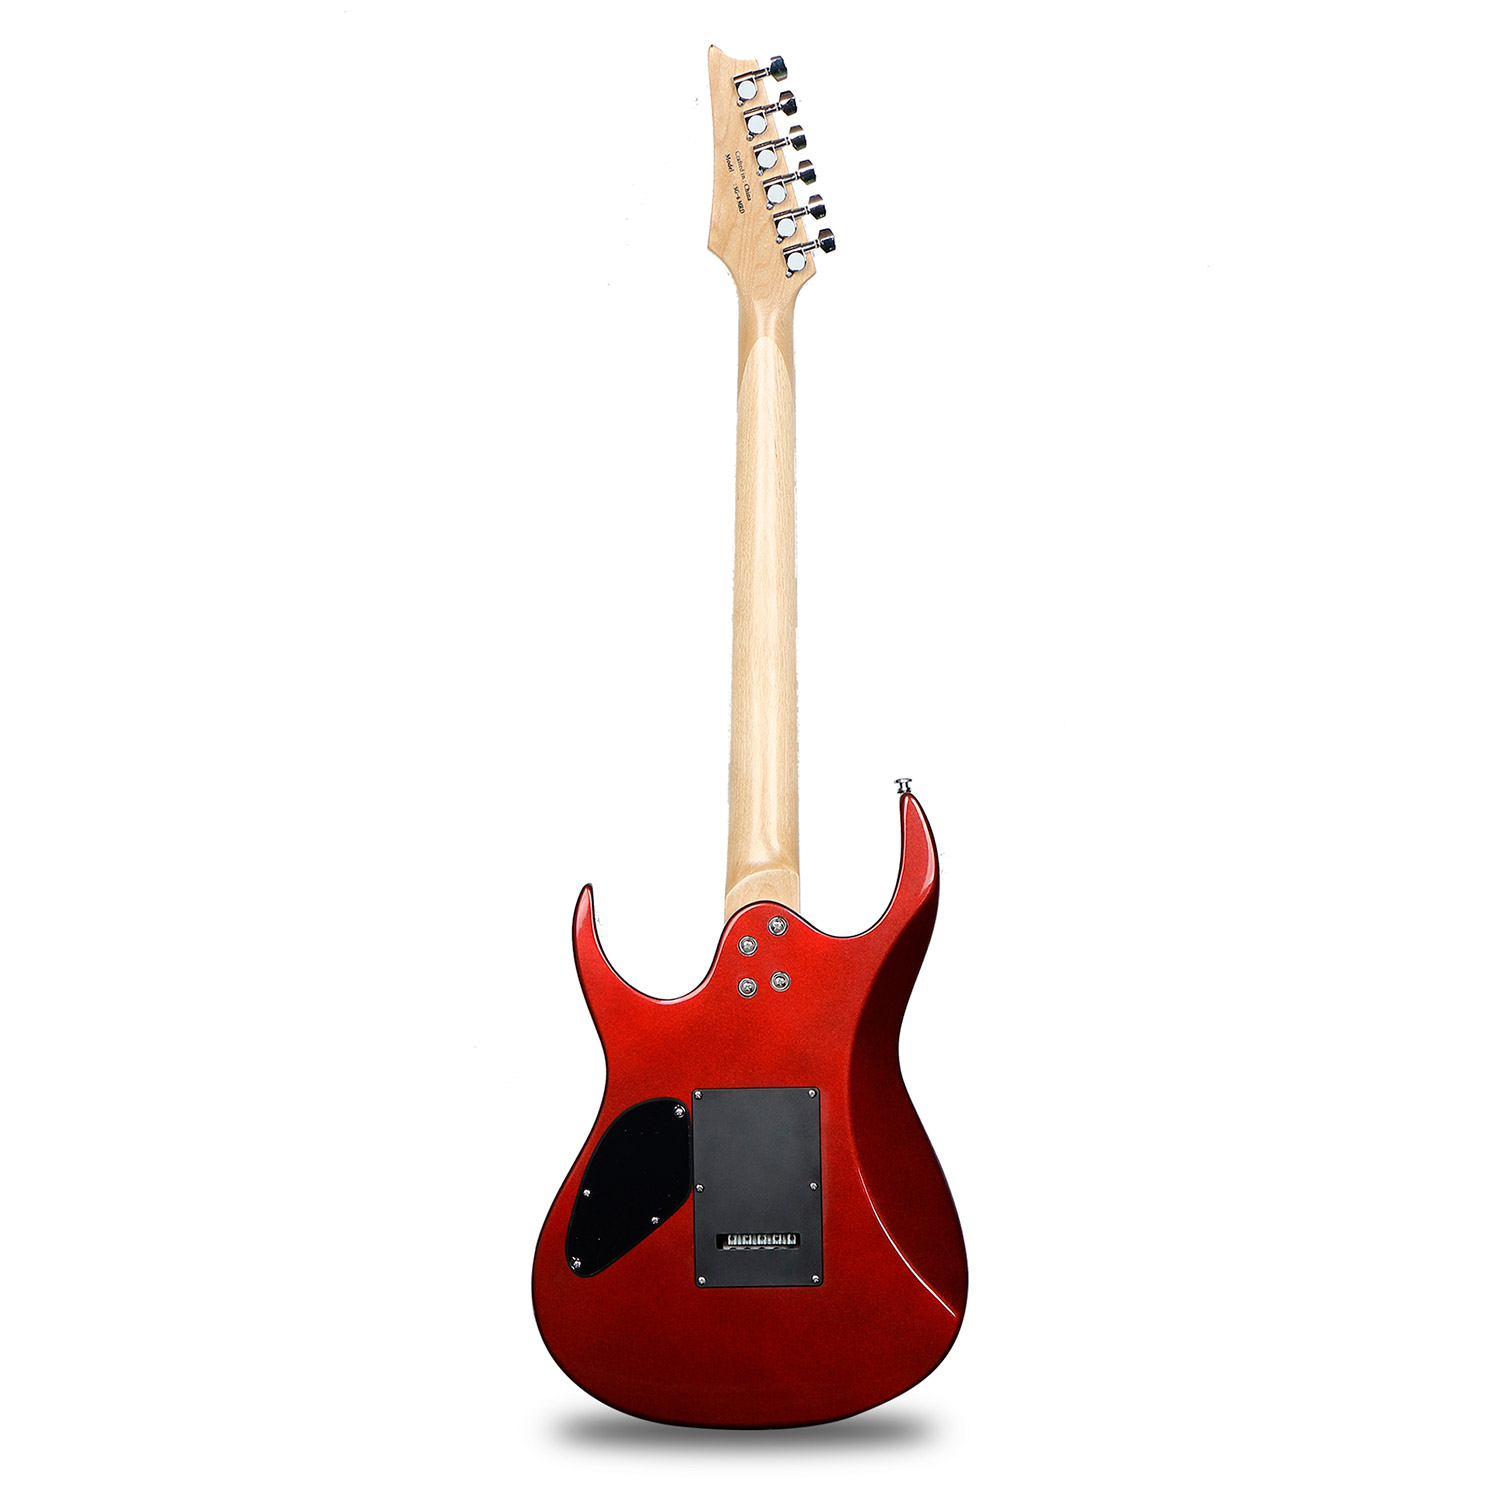 Bosstone SG-06 MRD  гитара электрическая, 6 струн, цвет красный